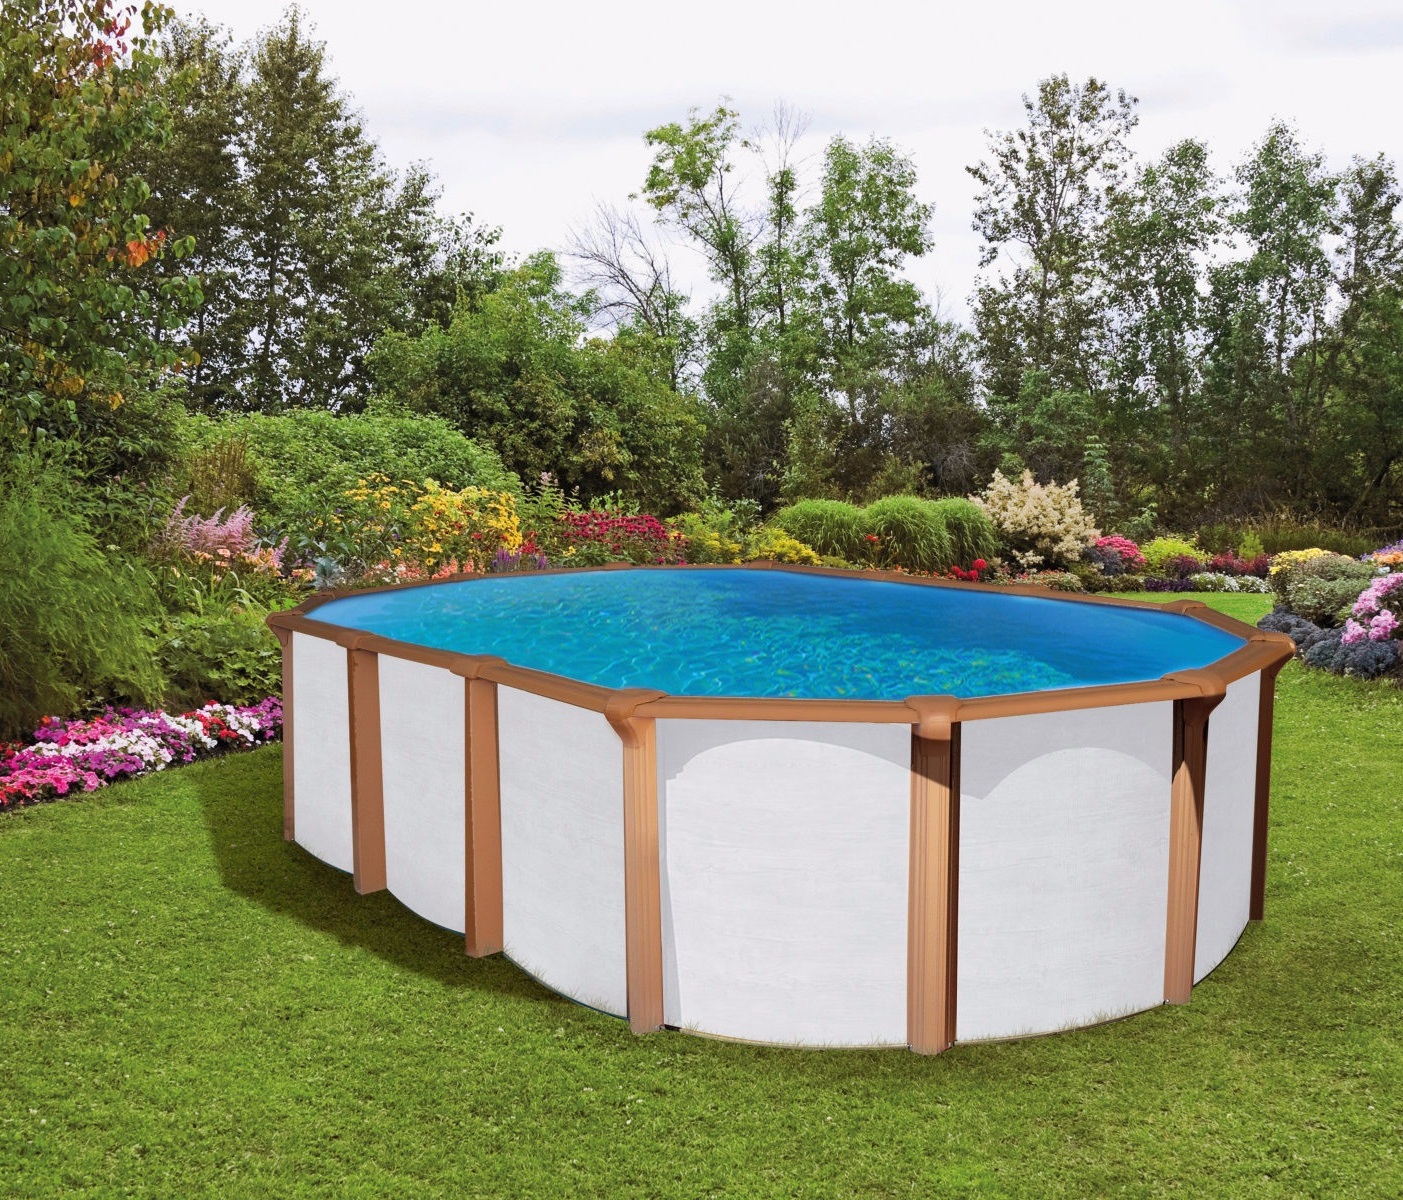 Pool 7,3 x 3,6 x 1,35m white wood Oval Stahlwand Schwimmbecken breiter Handlauf